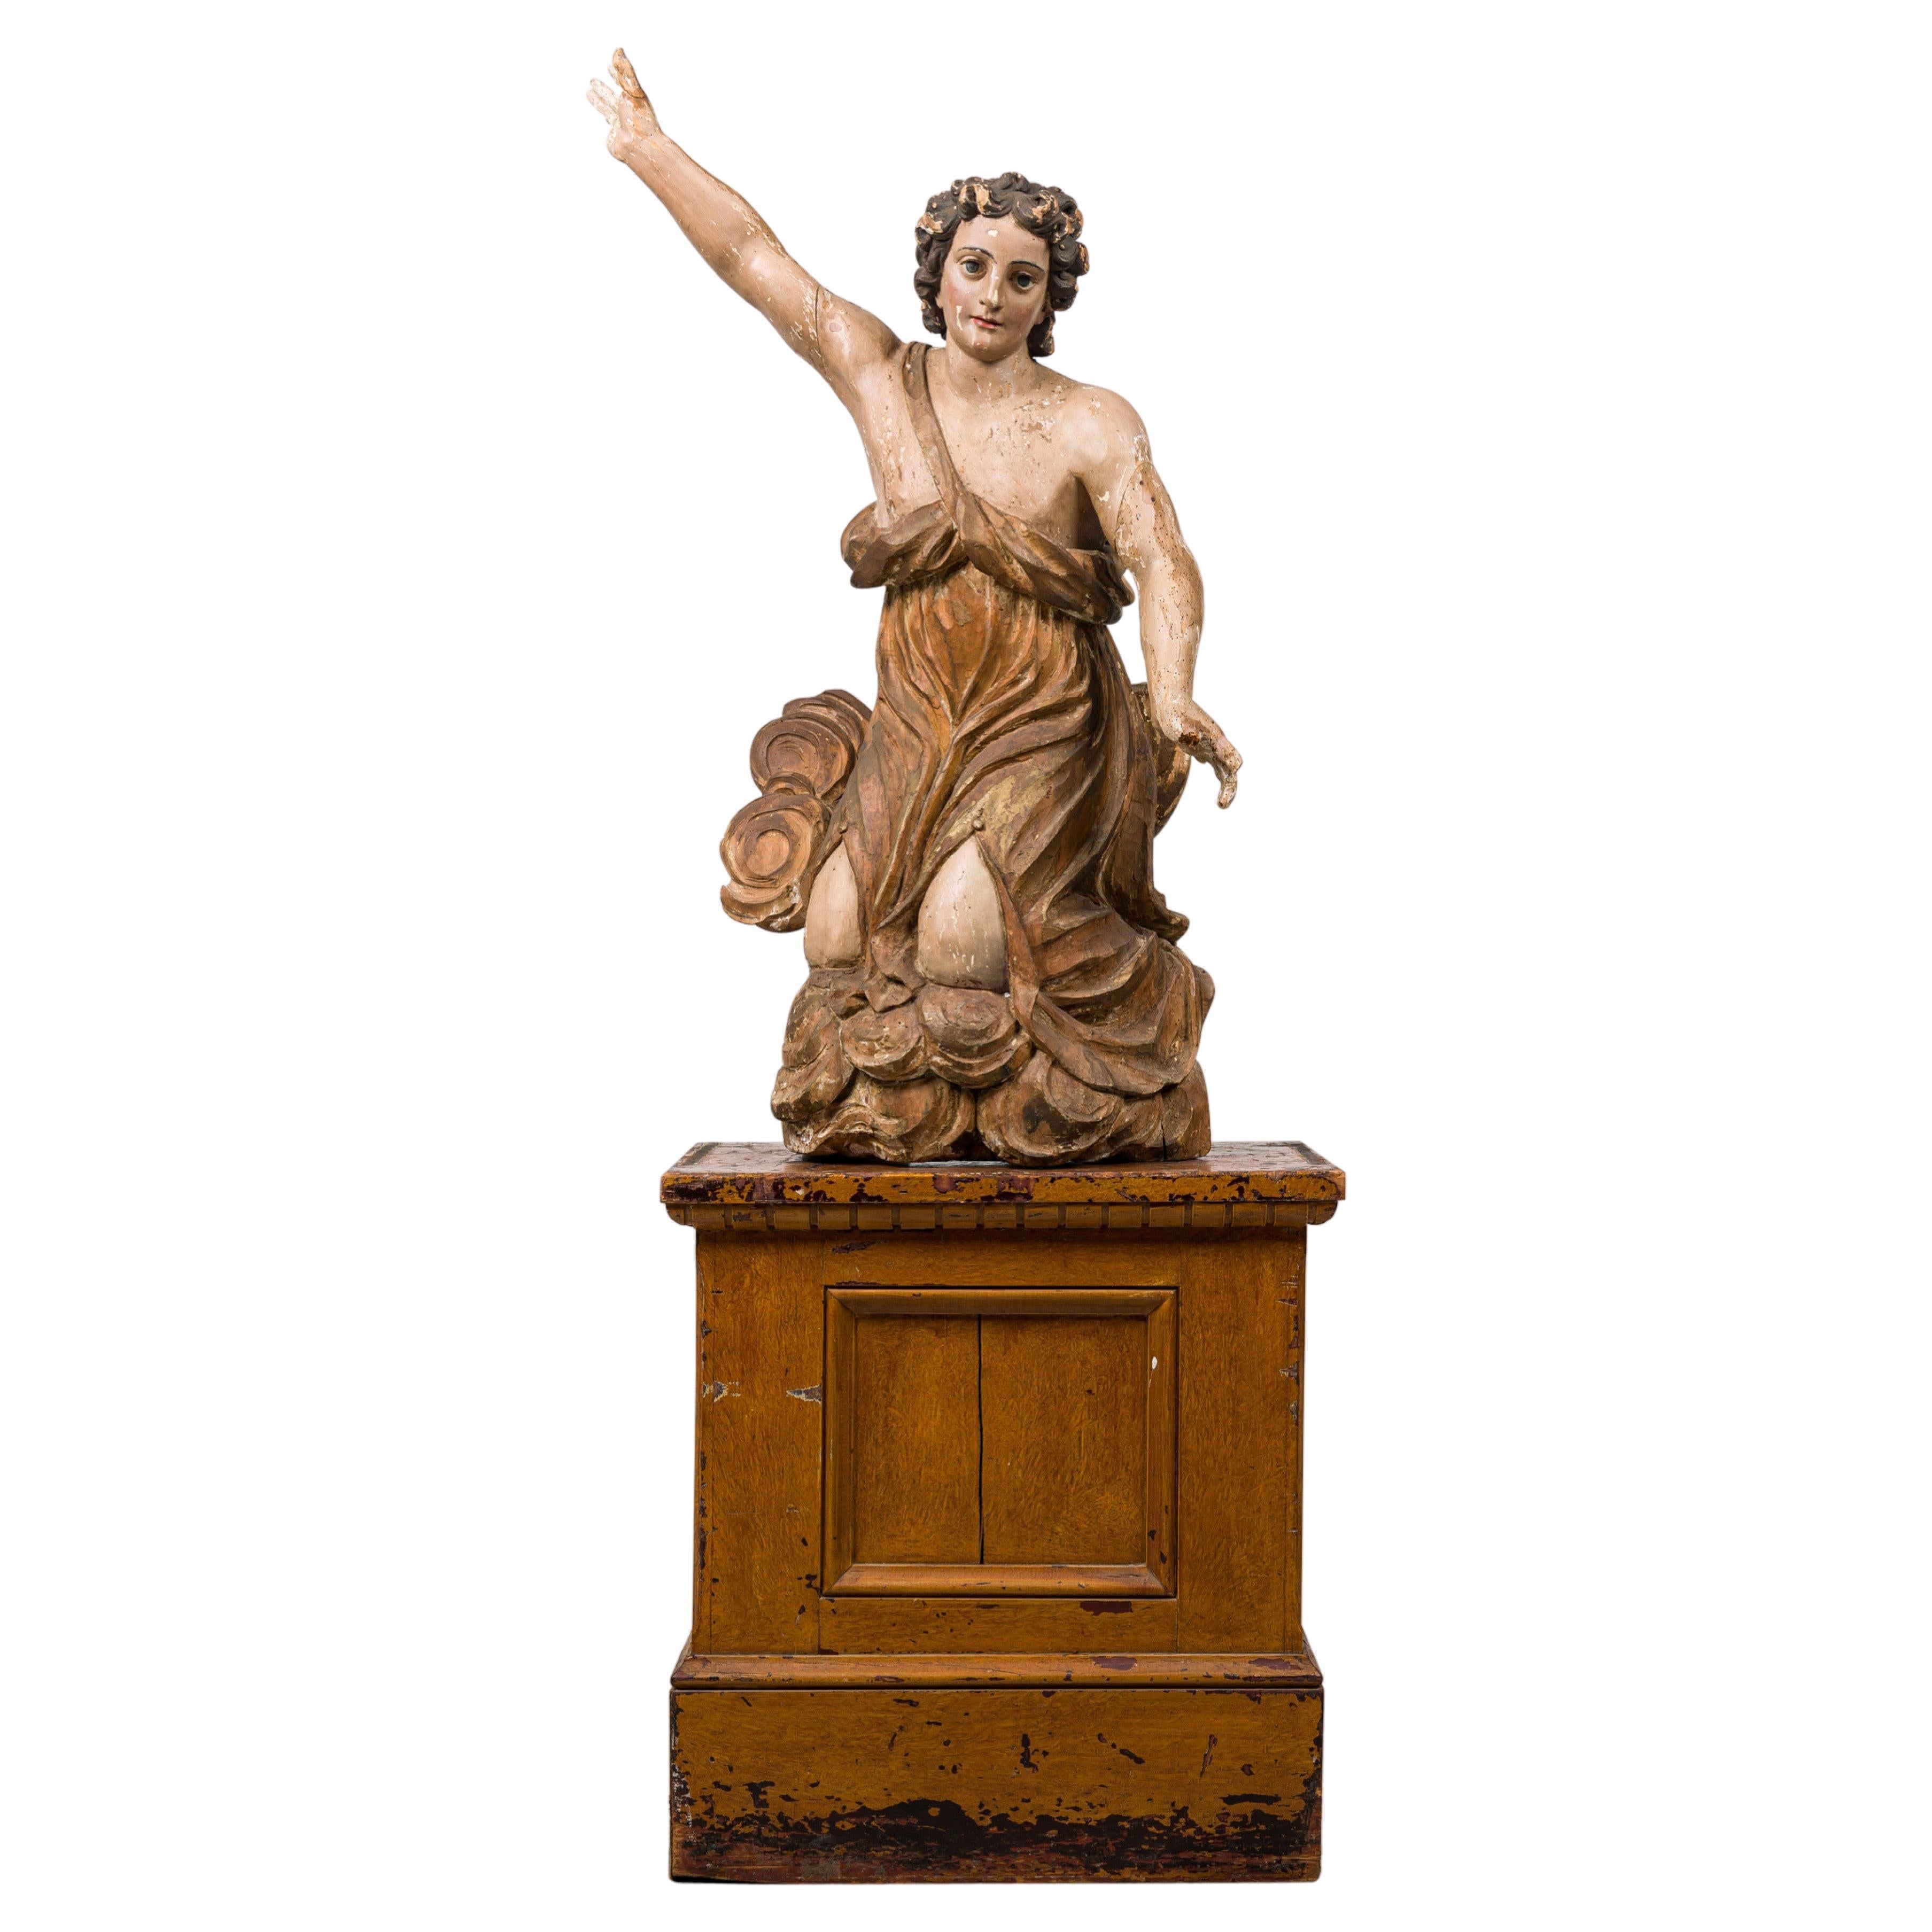 Ange monumental de la Renaissance italienne en bois doré peint de façon baroque sur Stand